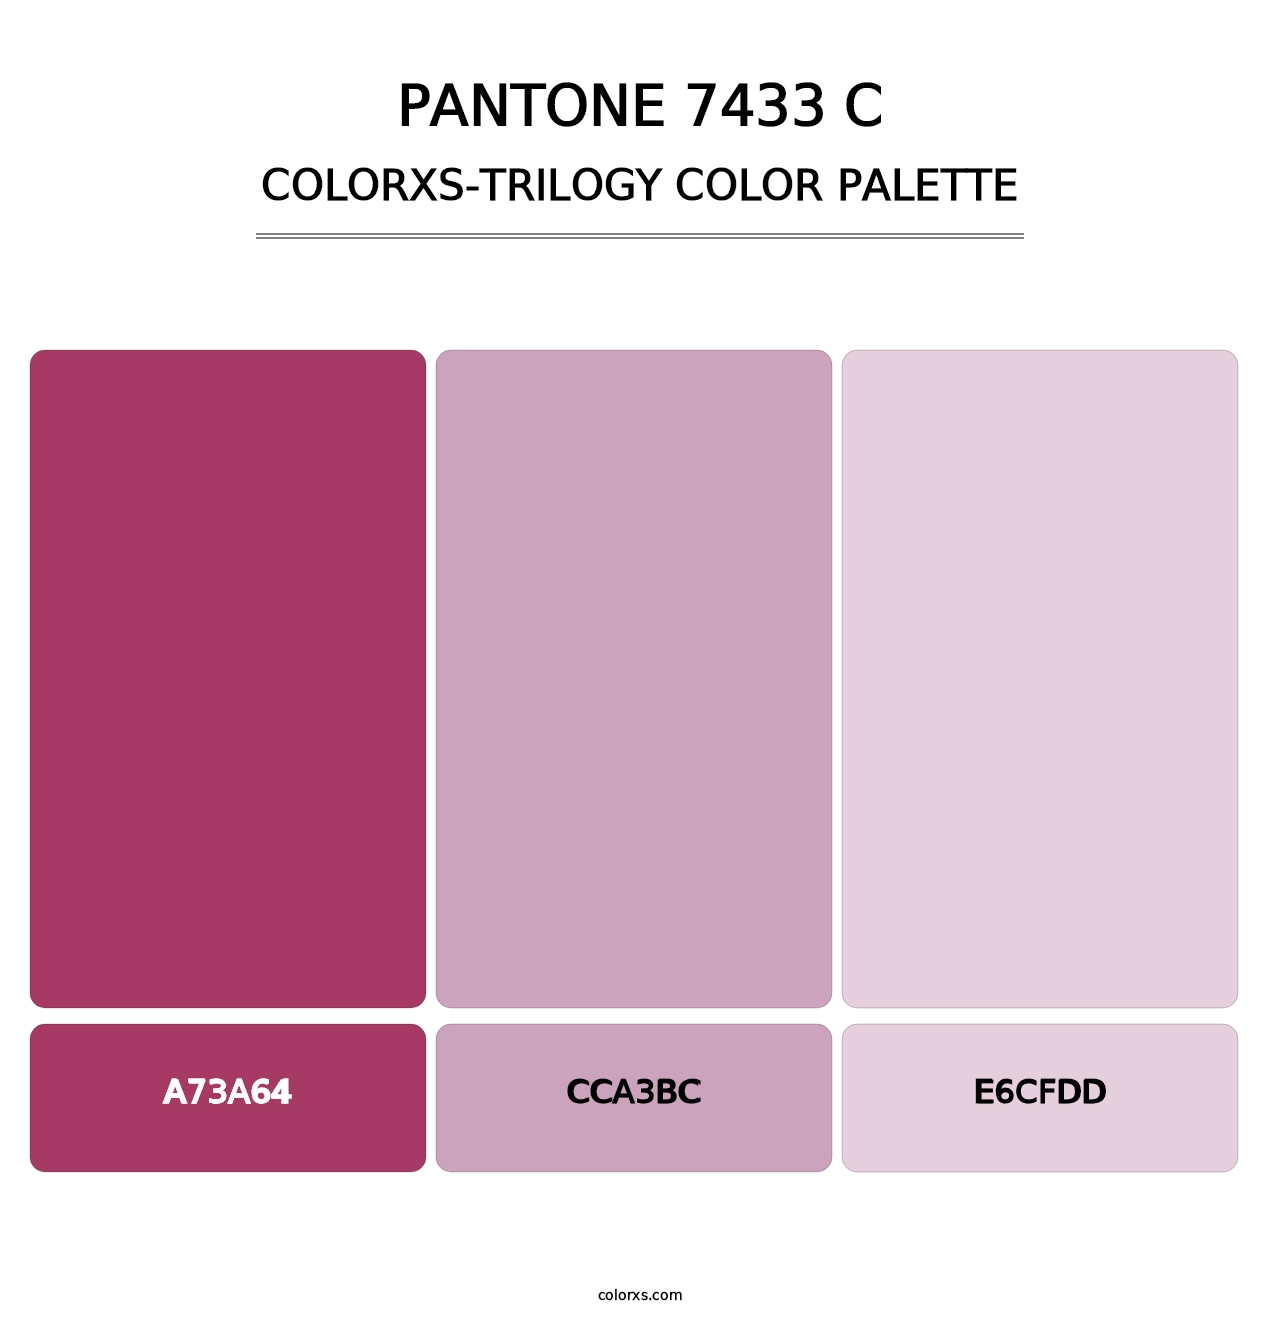 PANTONE 7433 C - Colorxs Trilogy Palette